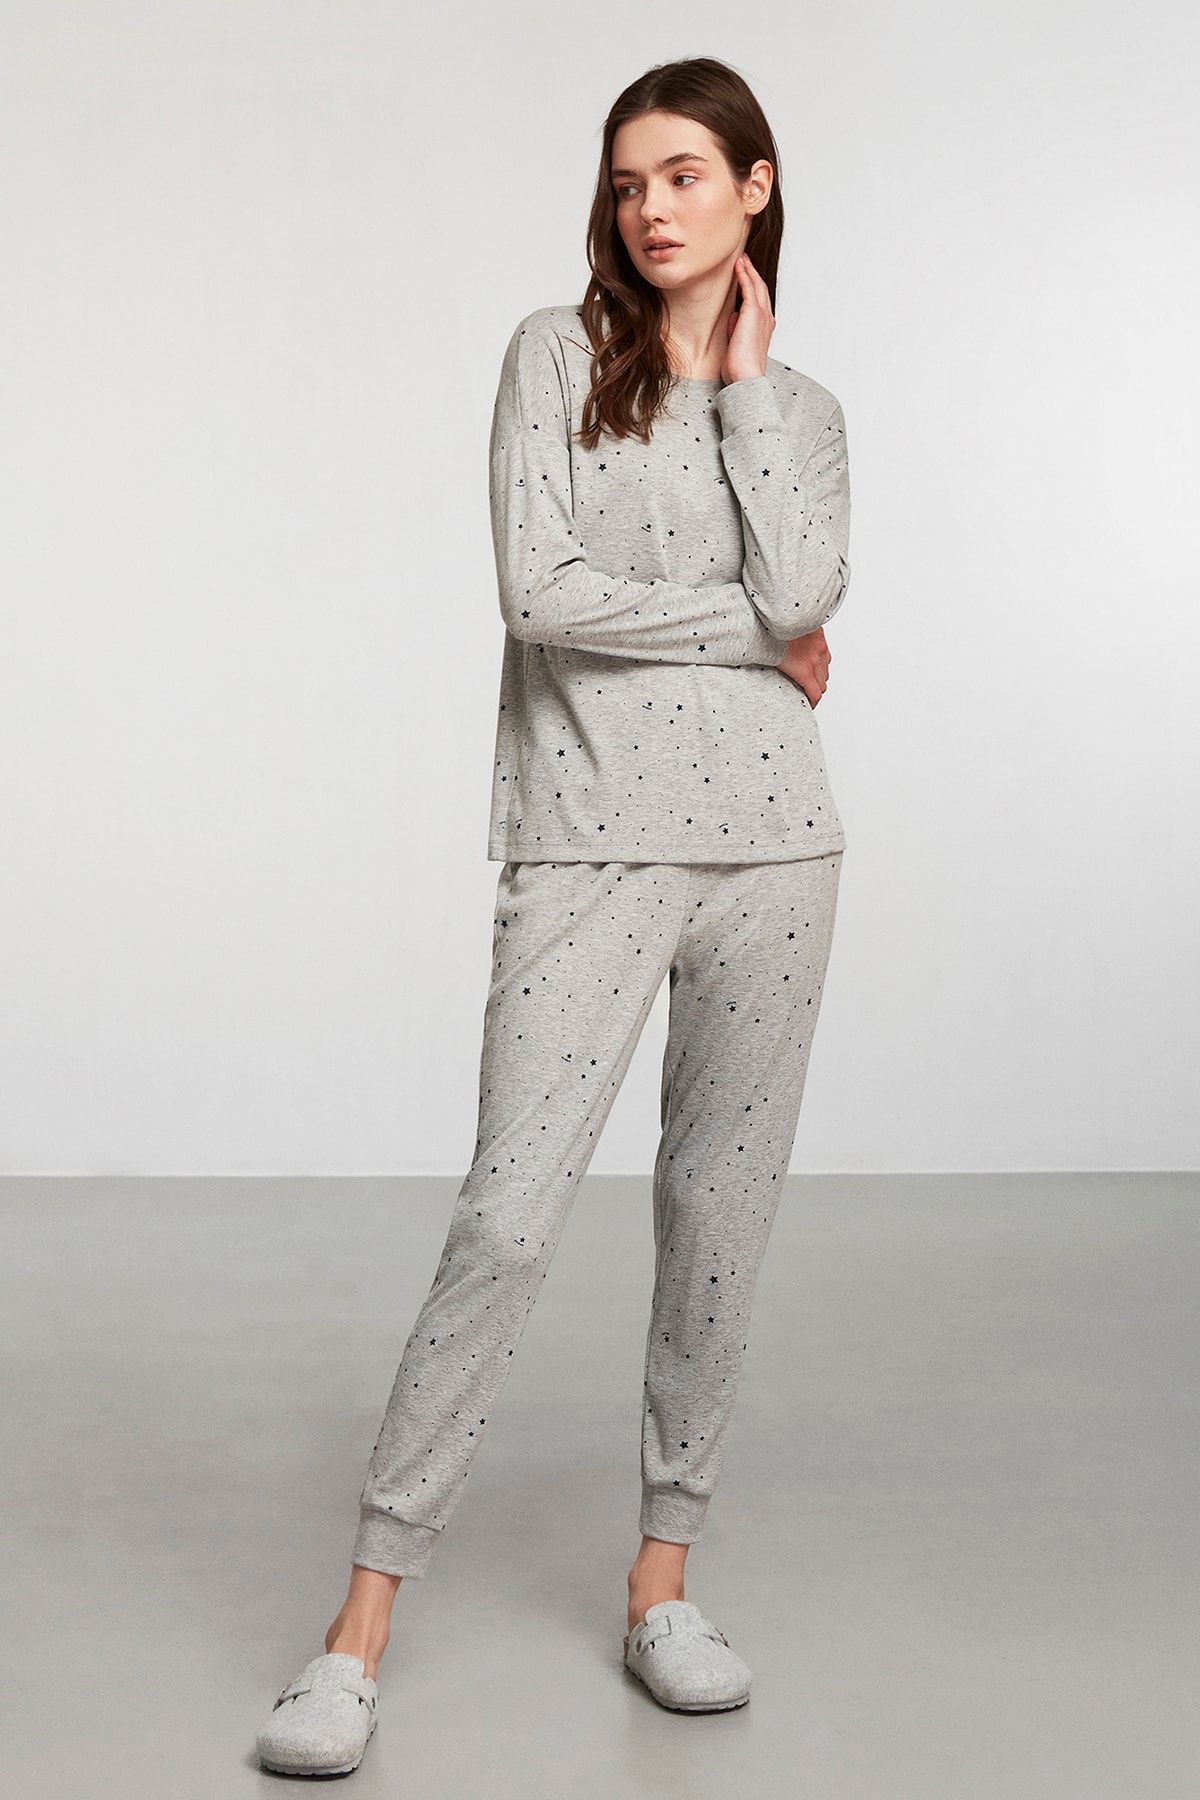 Catherines Gri Yıldız Desenli Örme Pijama Takım